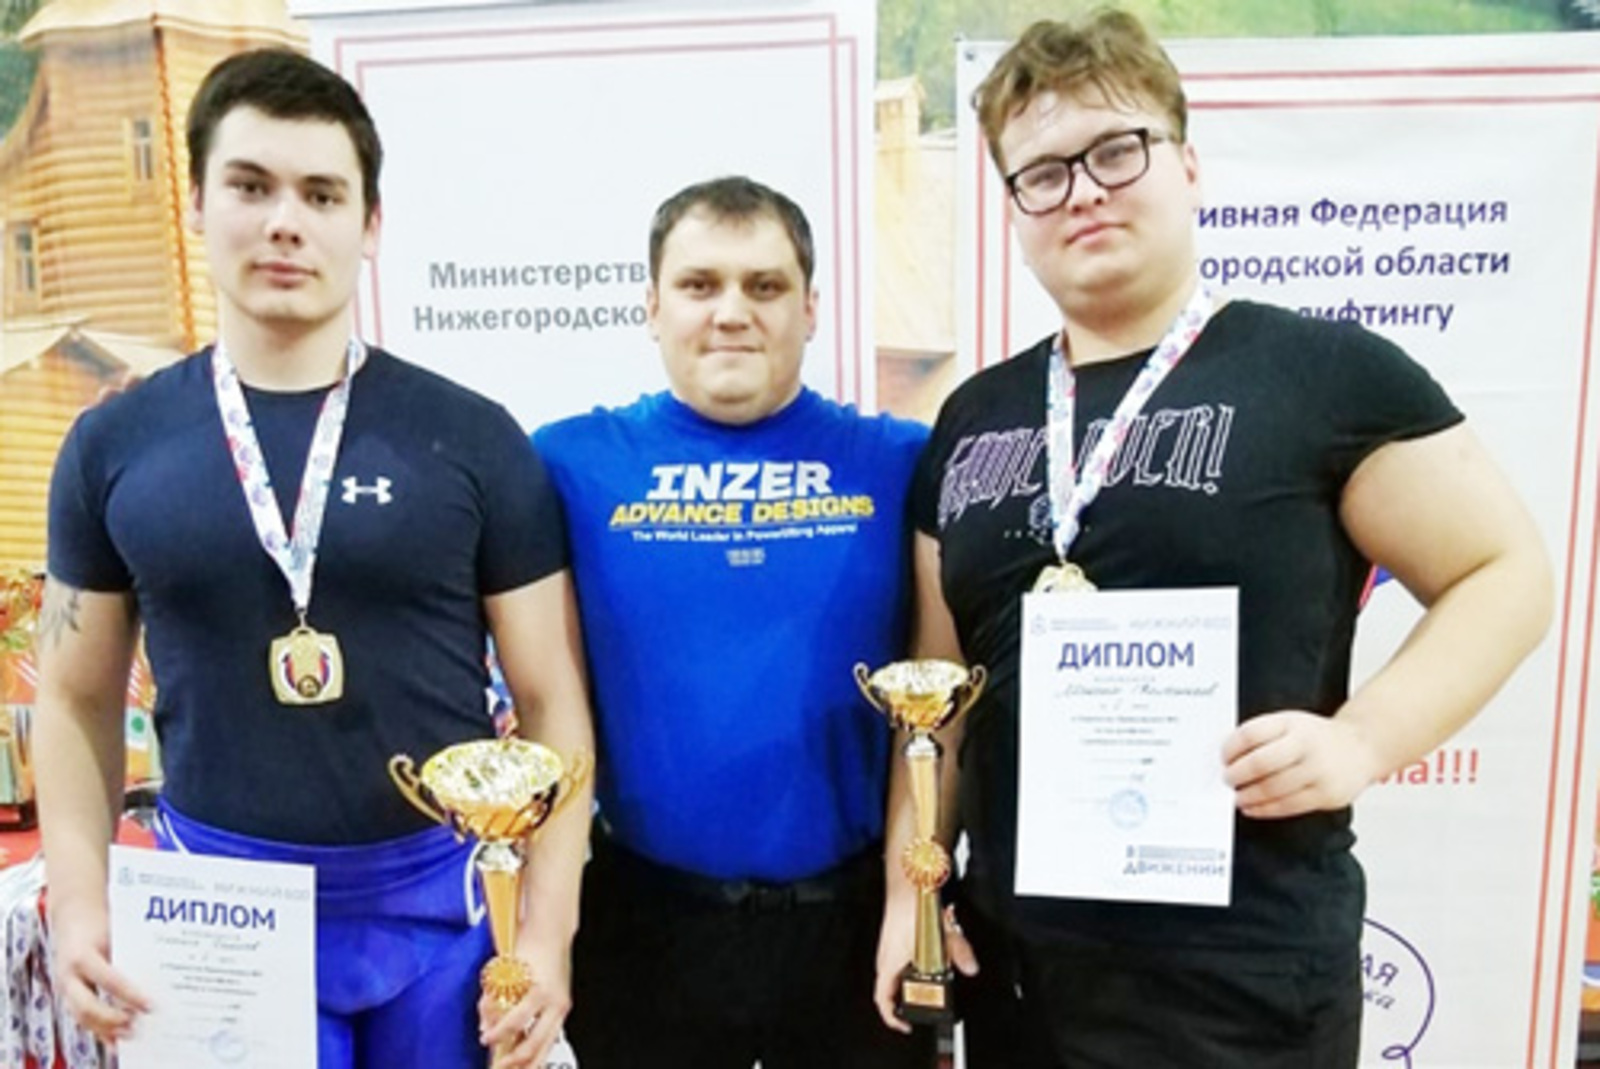 Денис Сулейманов (в центре) со своими воспитанниками Эмилем Ганеевым (слева) и Максимом Колесниковым (справа)